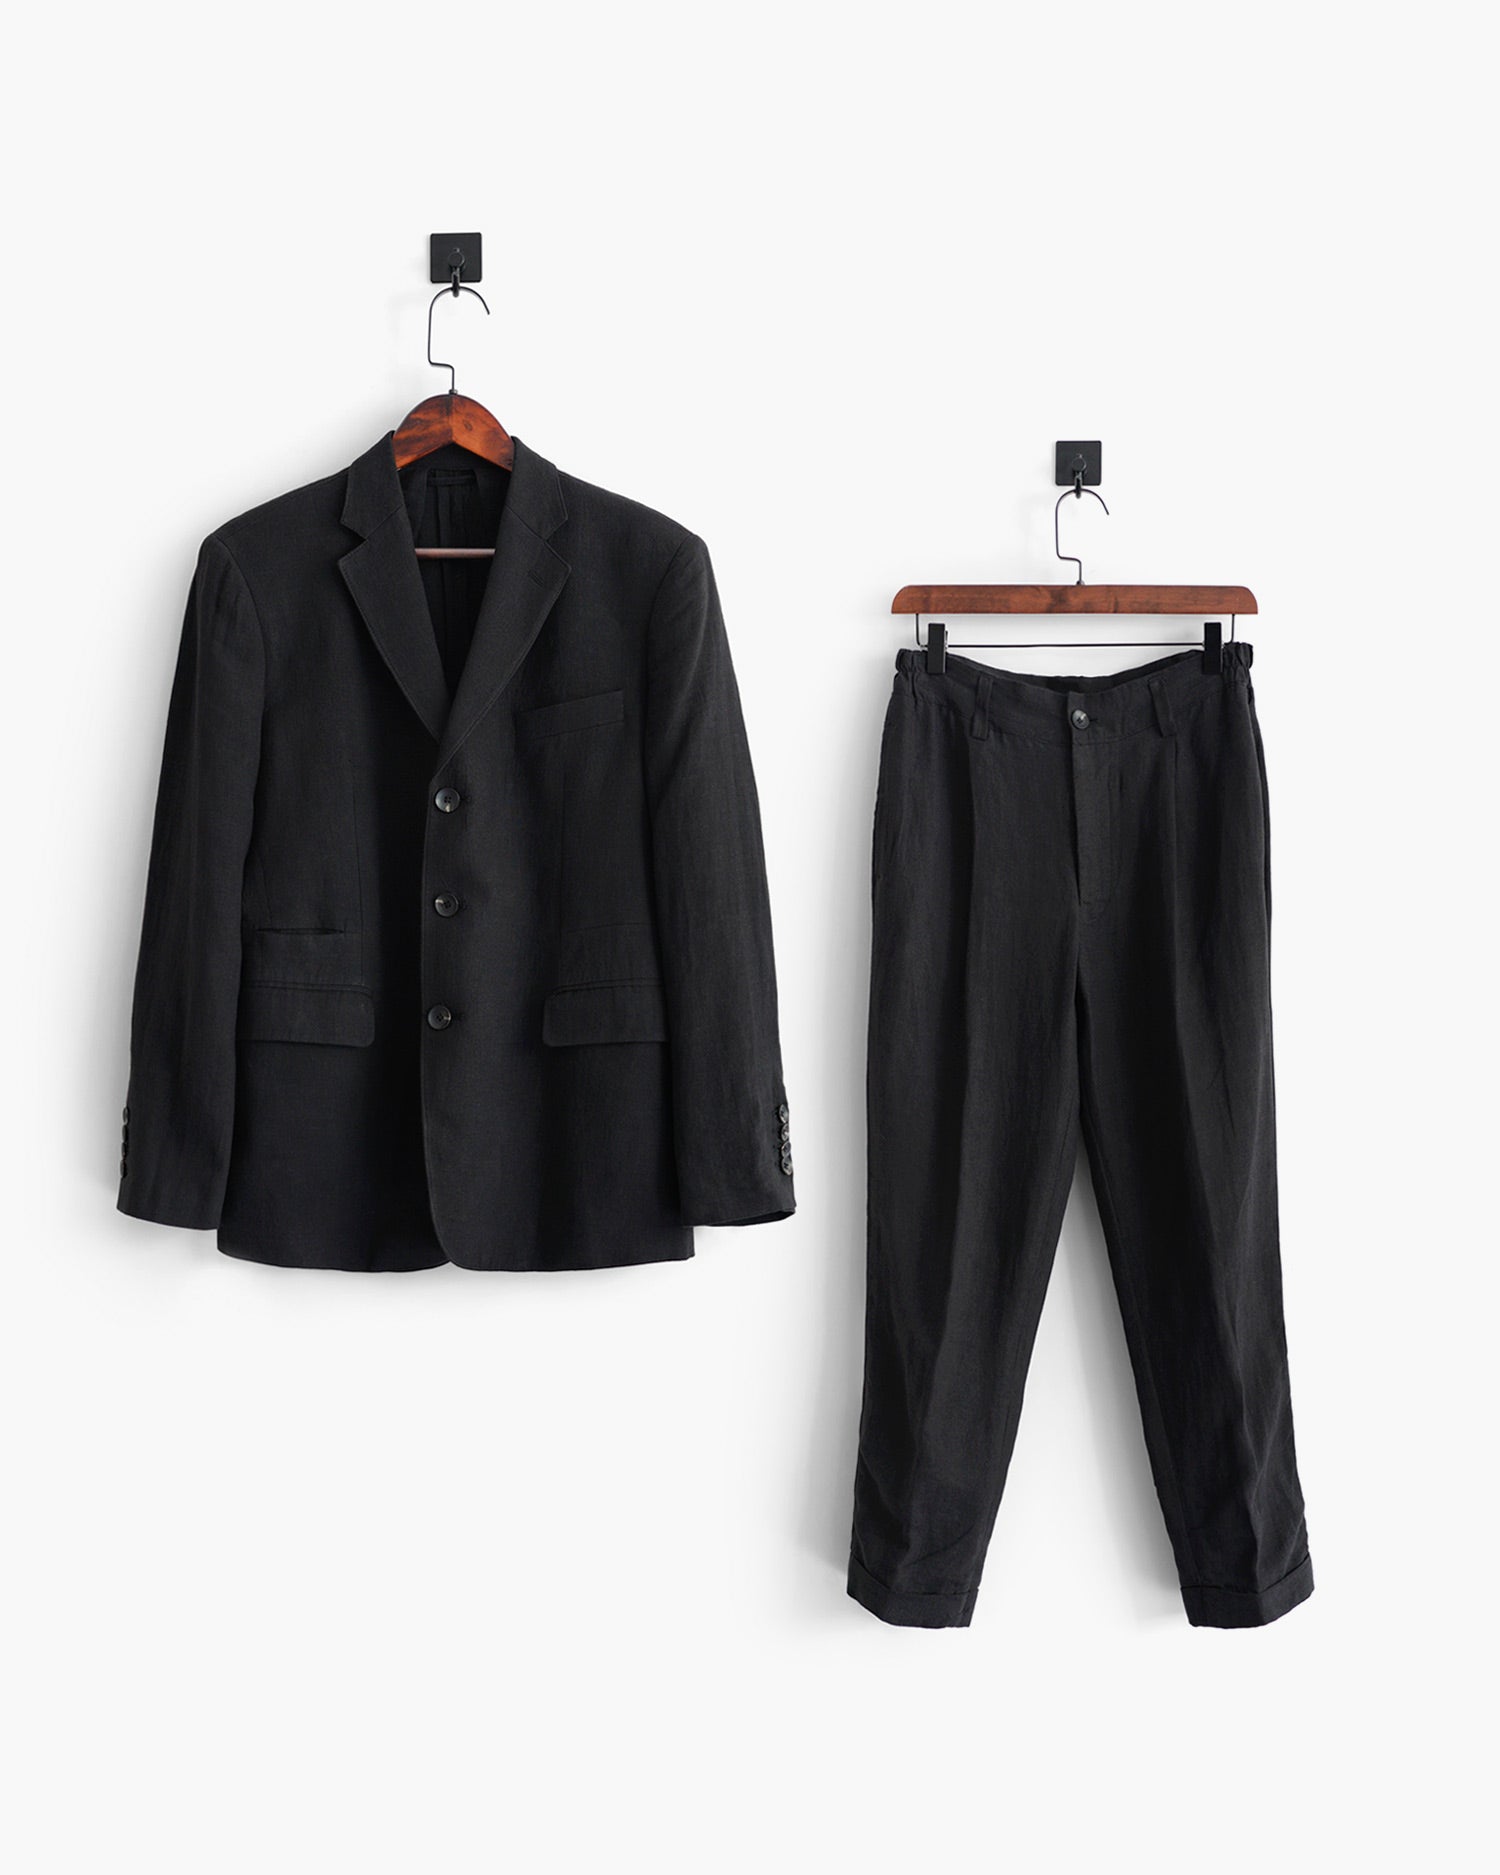 ROSEN-S Daily Suit - Black Linen